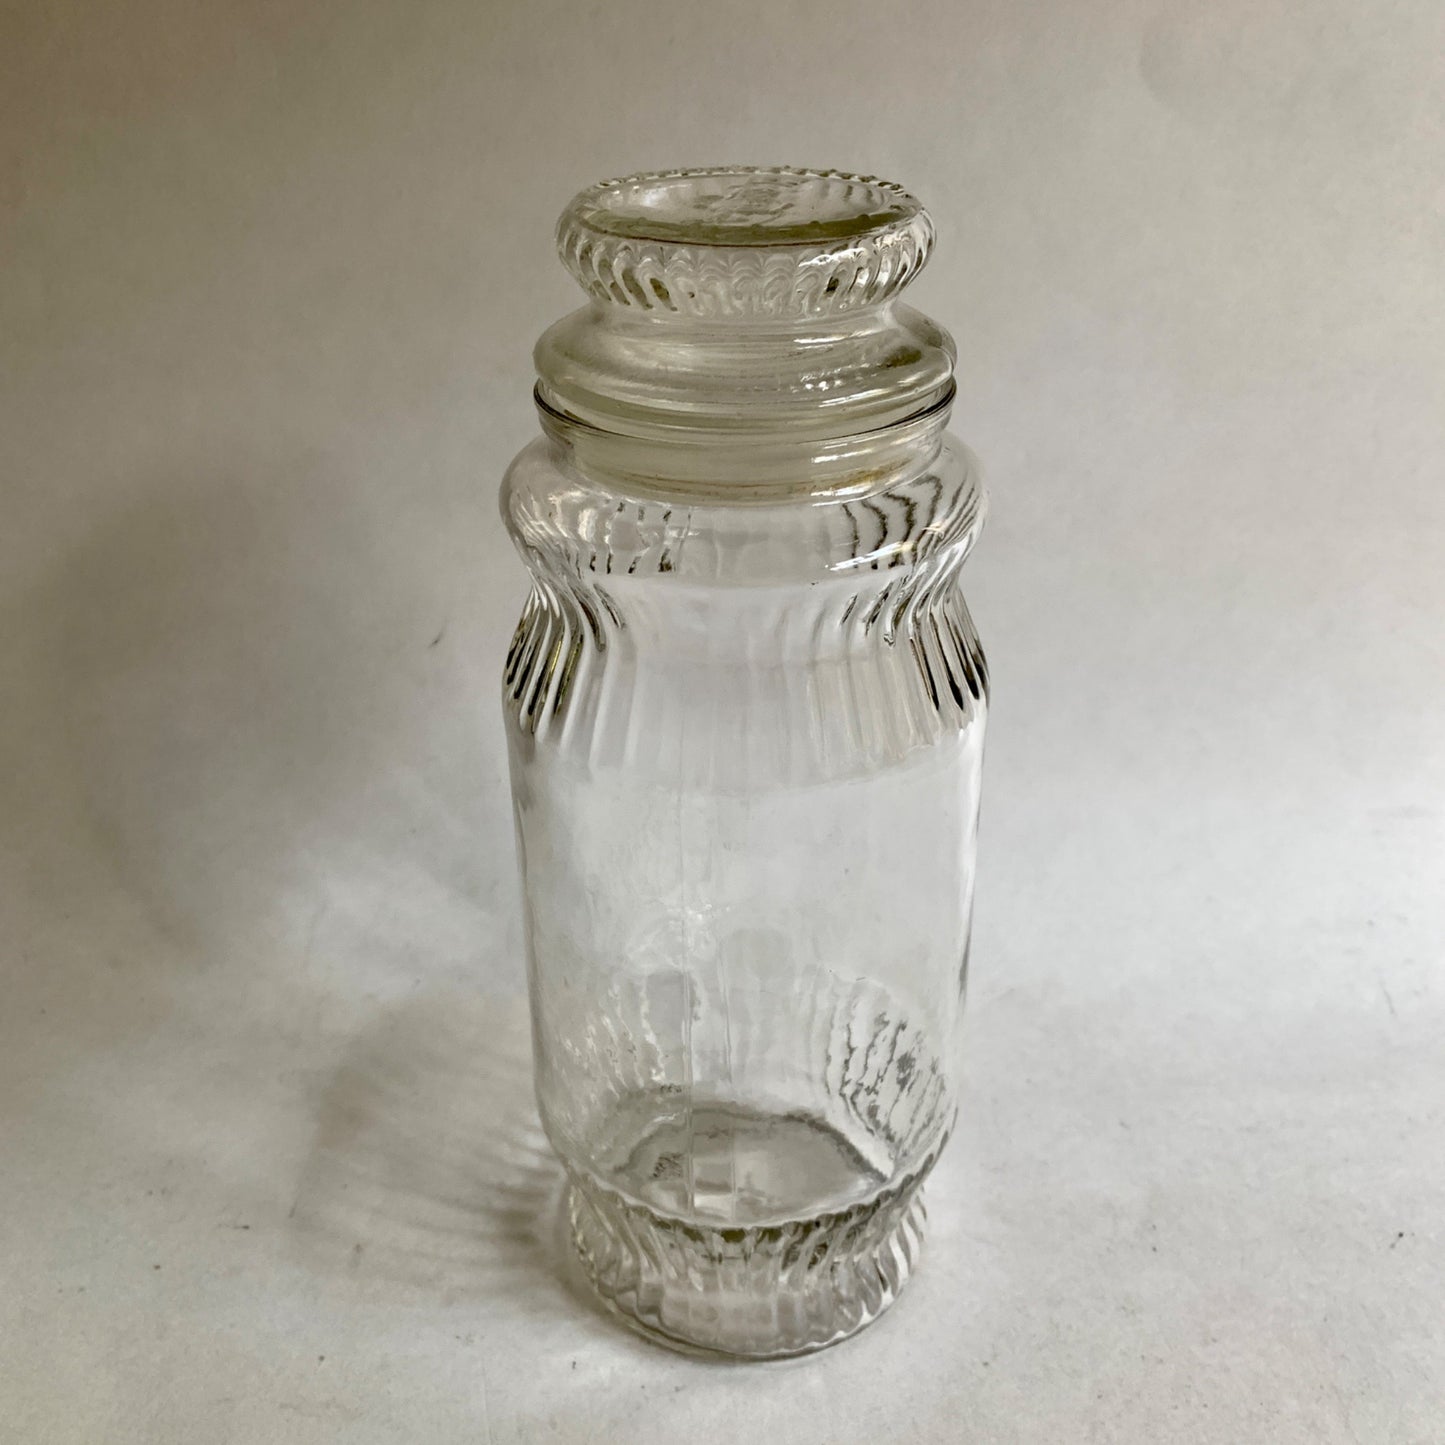 Mr. Peanut 1979 Glass Jar Lidded